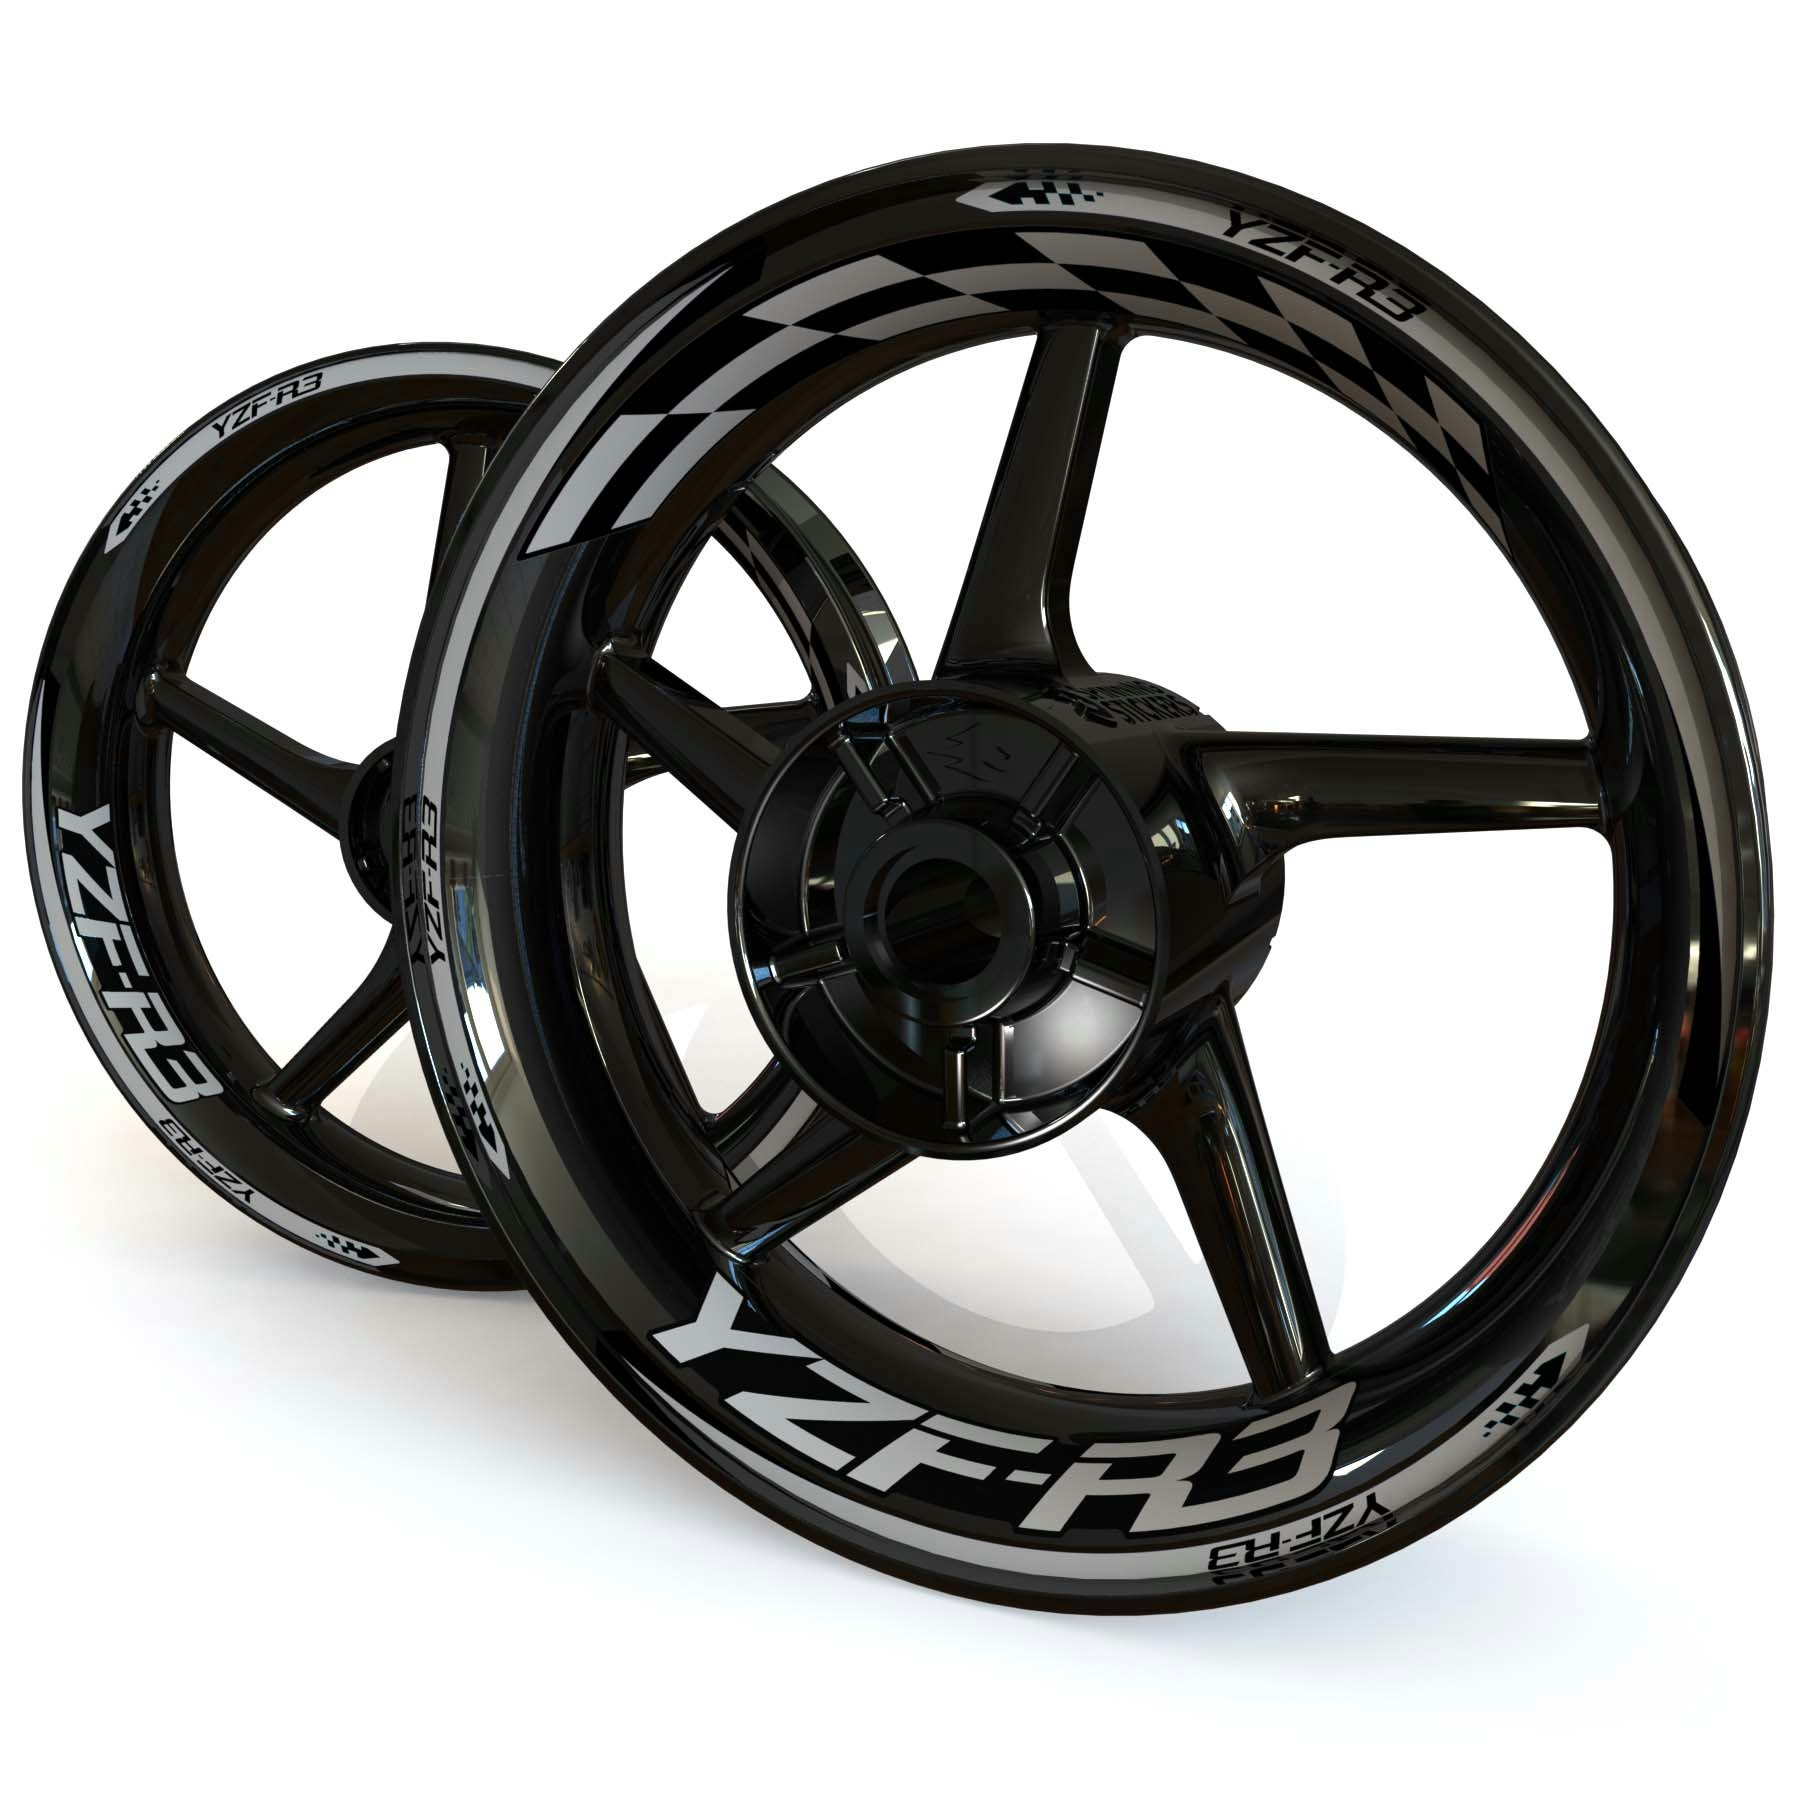 Adhesivos para ruedas Yamaha YZF-R3 - "Checker" Diseño estándar